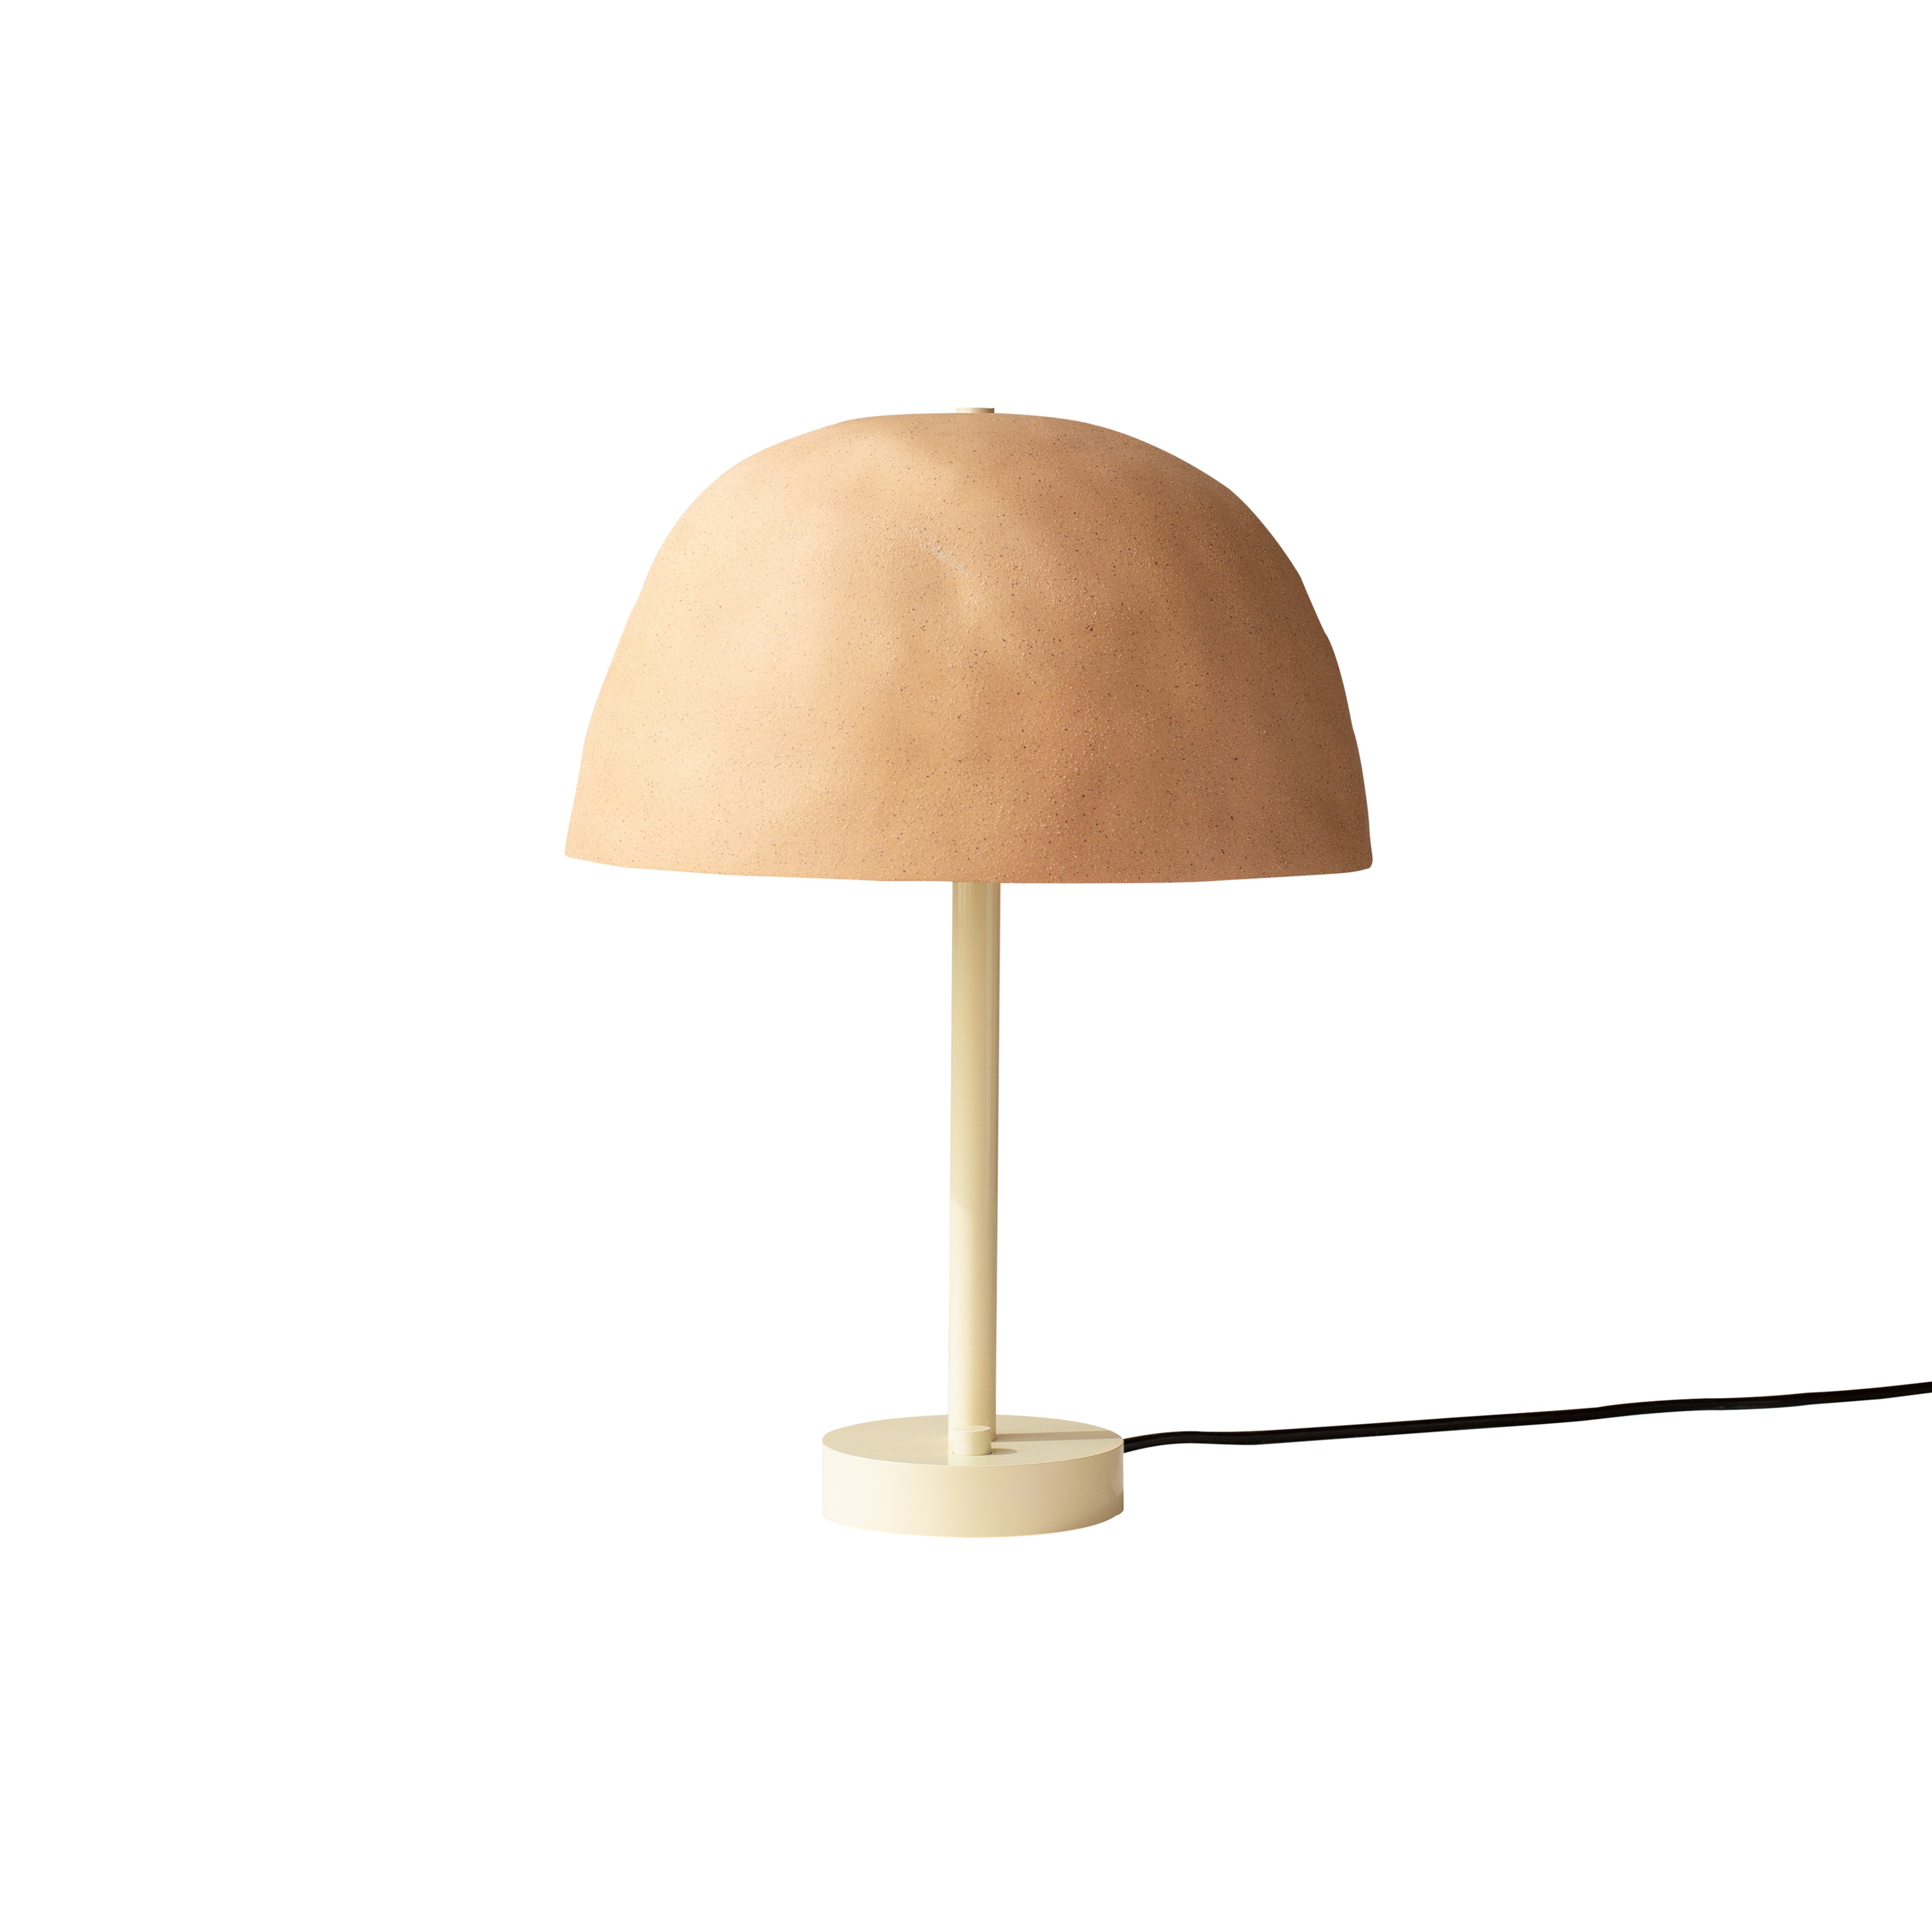 Dome Table Lamp: Tan Clay + Bone